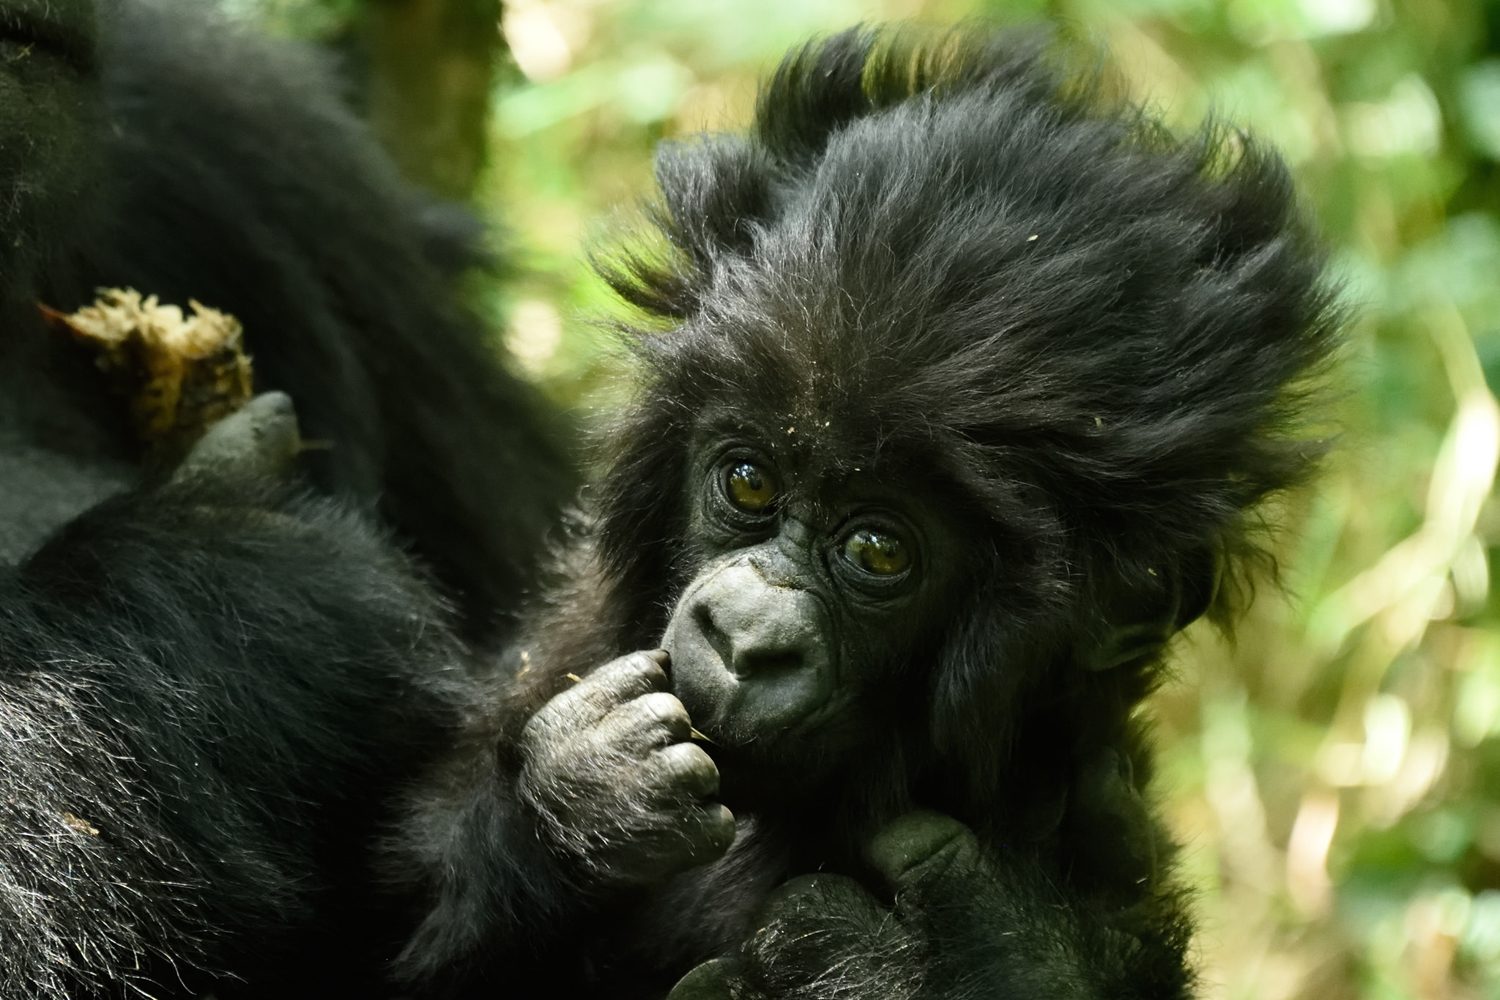 Visit-Rwanda-Kwita-Izina-Baby-Gorilla-2-1920x1280